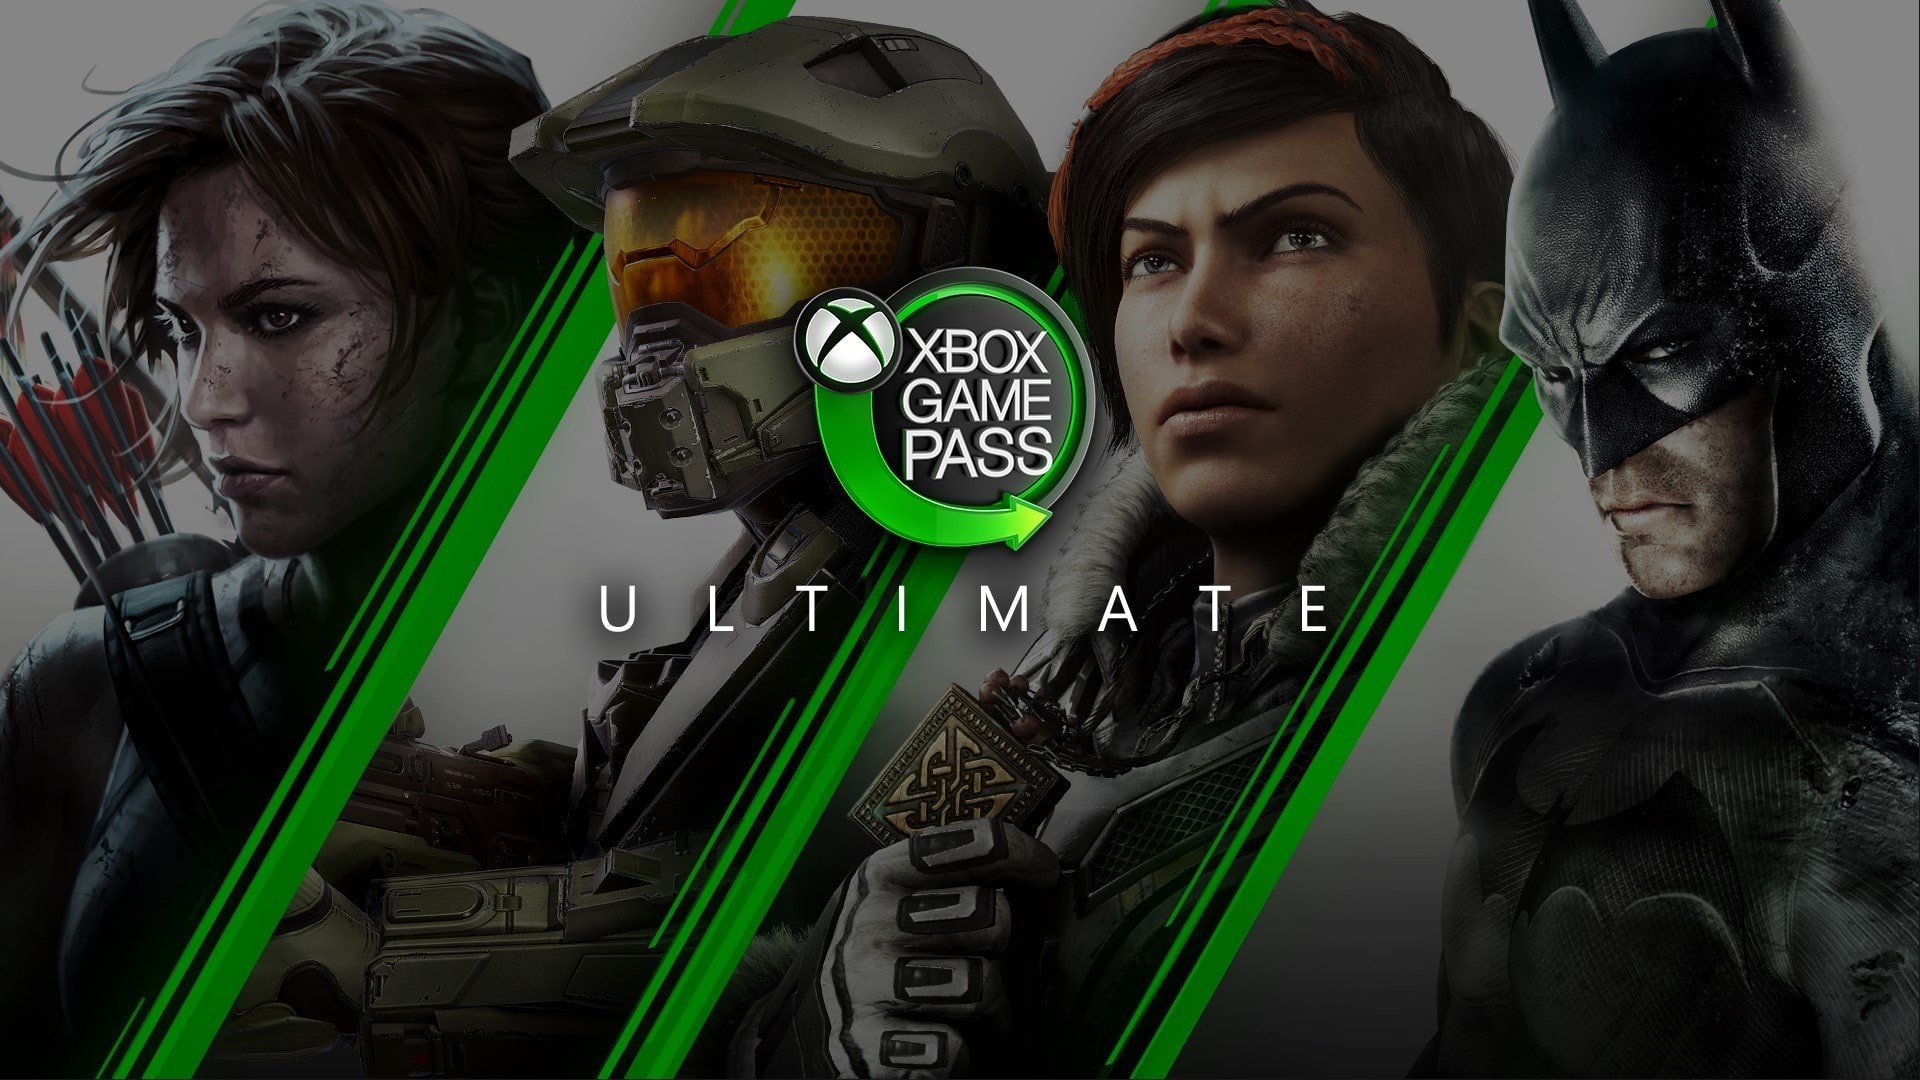 Imagem promocional do Xbox Game Pass Ultimate mostrando os protagonistas do videogame